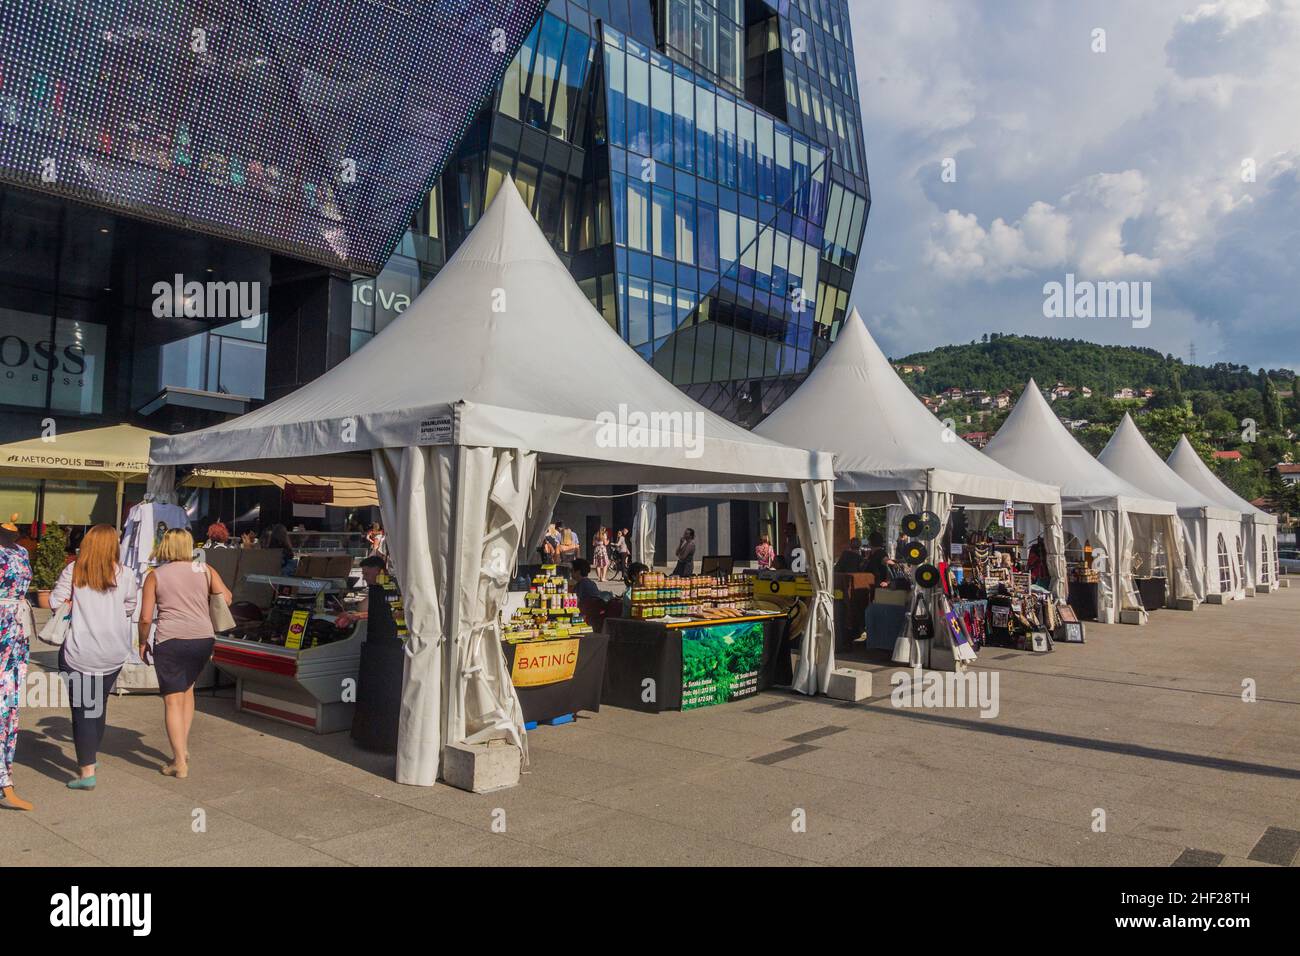 SARAJEVO, BOSNIA AND HERZEGOVINA - JUNE 11, 2019: Market stalls in Sarajevo, Bosnia and Herzegovina Stock Photo